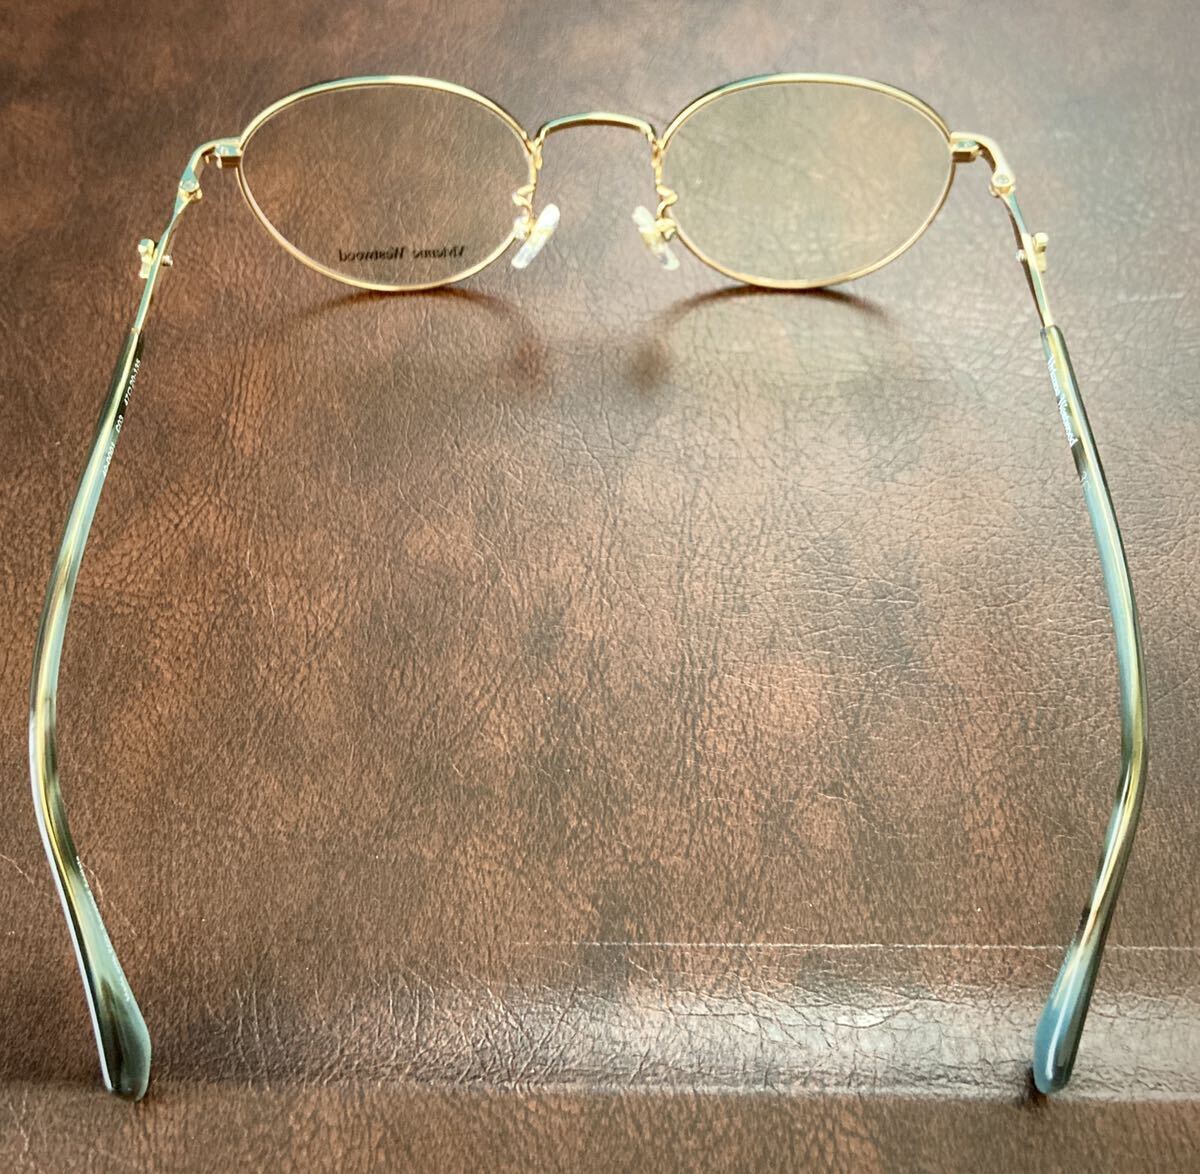 【即決/送料込み】新品/未使用(B)Vivienne Westwood/ヴィヴィアン ウエトウッド 眼鏡/メガネ/めがね アイウェア